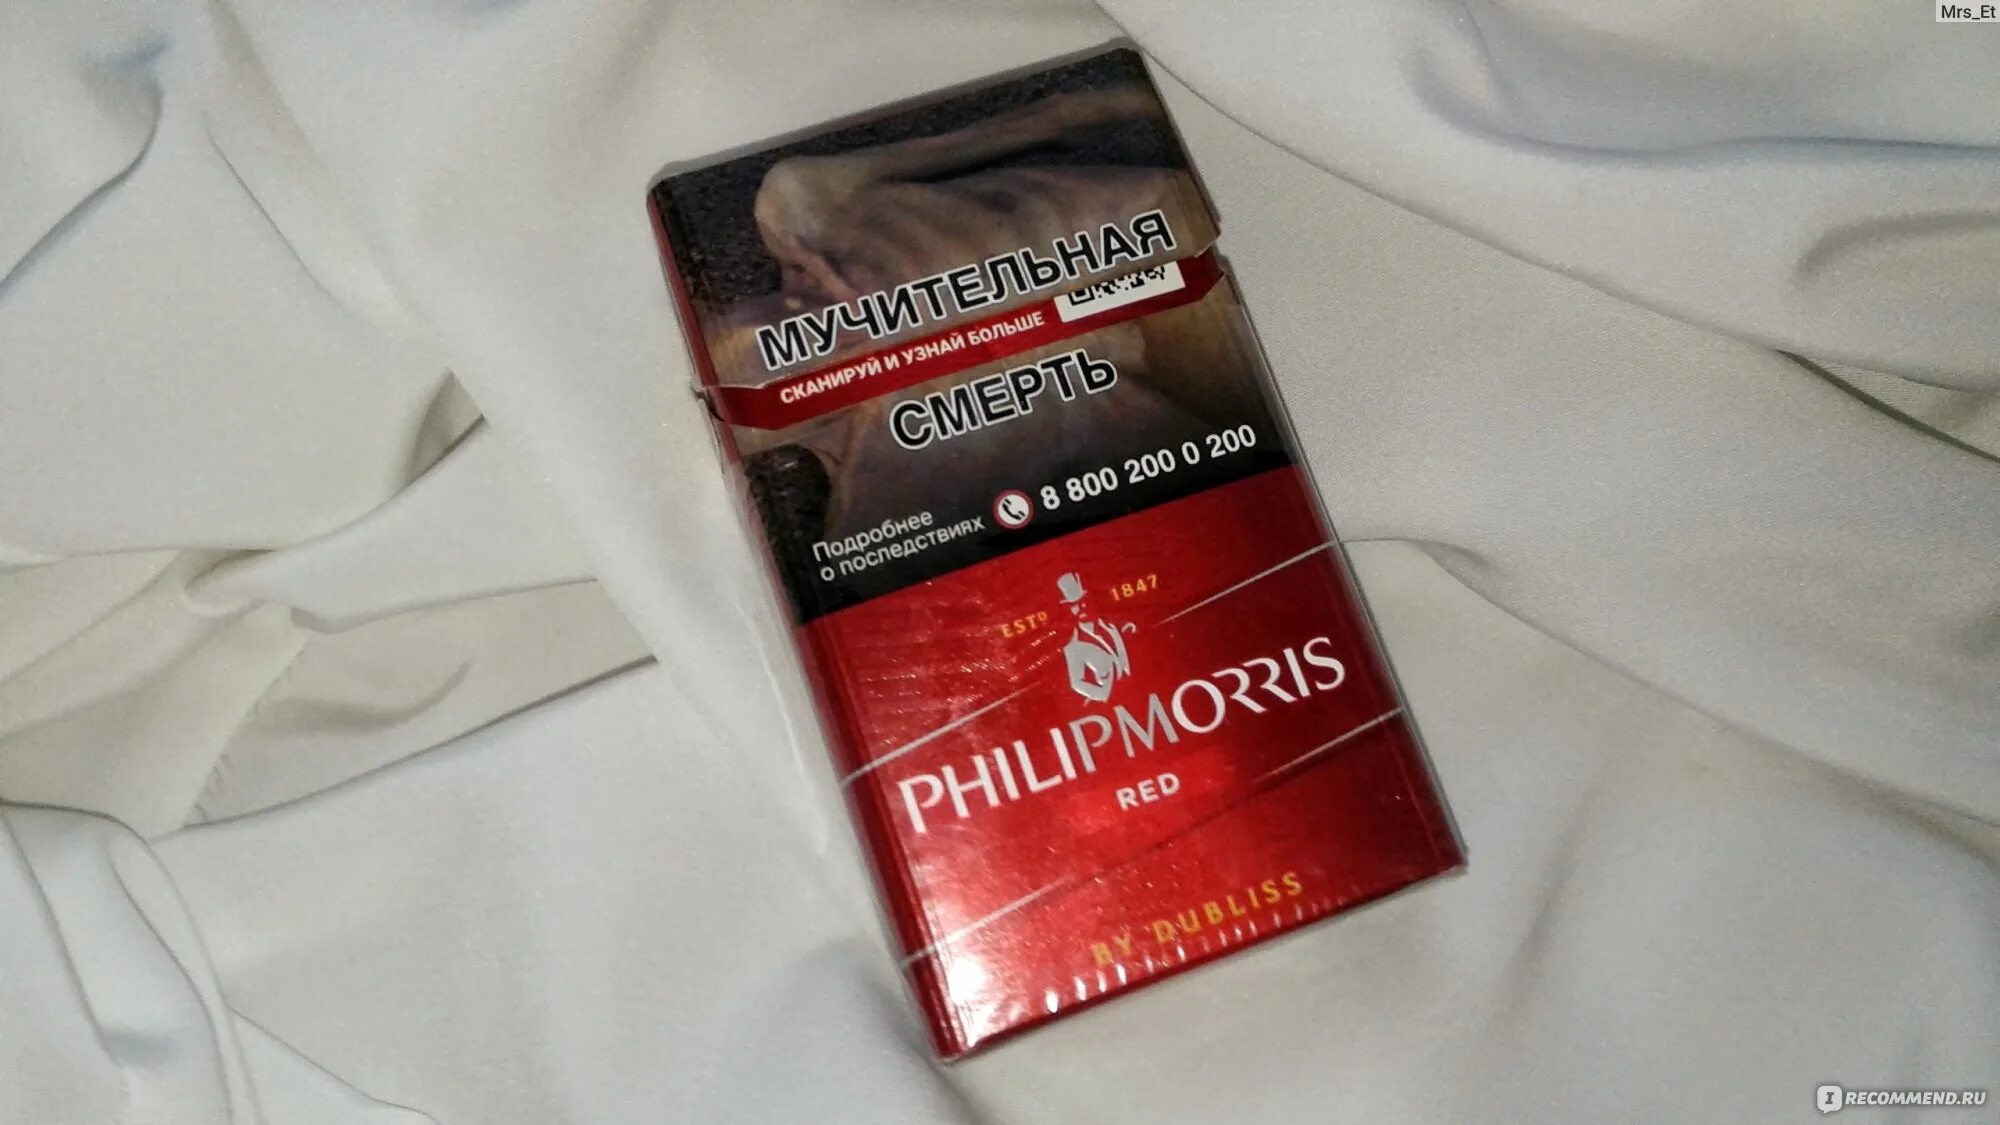 Филип моррис красные. Филипс Морис сигареты красные. Сигареты Филип Моррис ред. Сигареты Philip Morris красный. Филипс Морис красный.